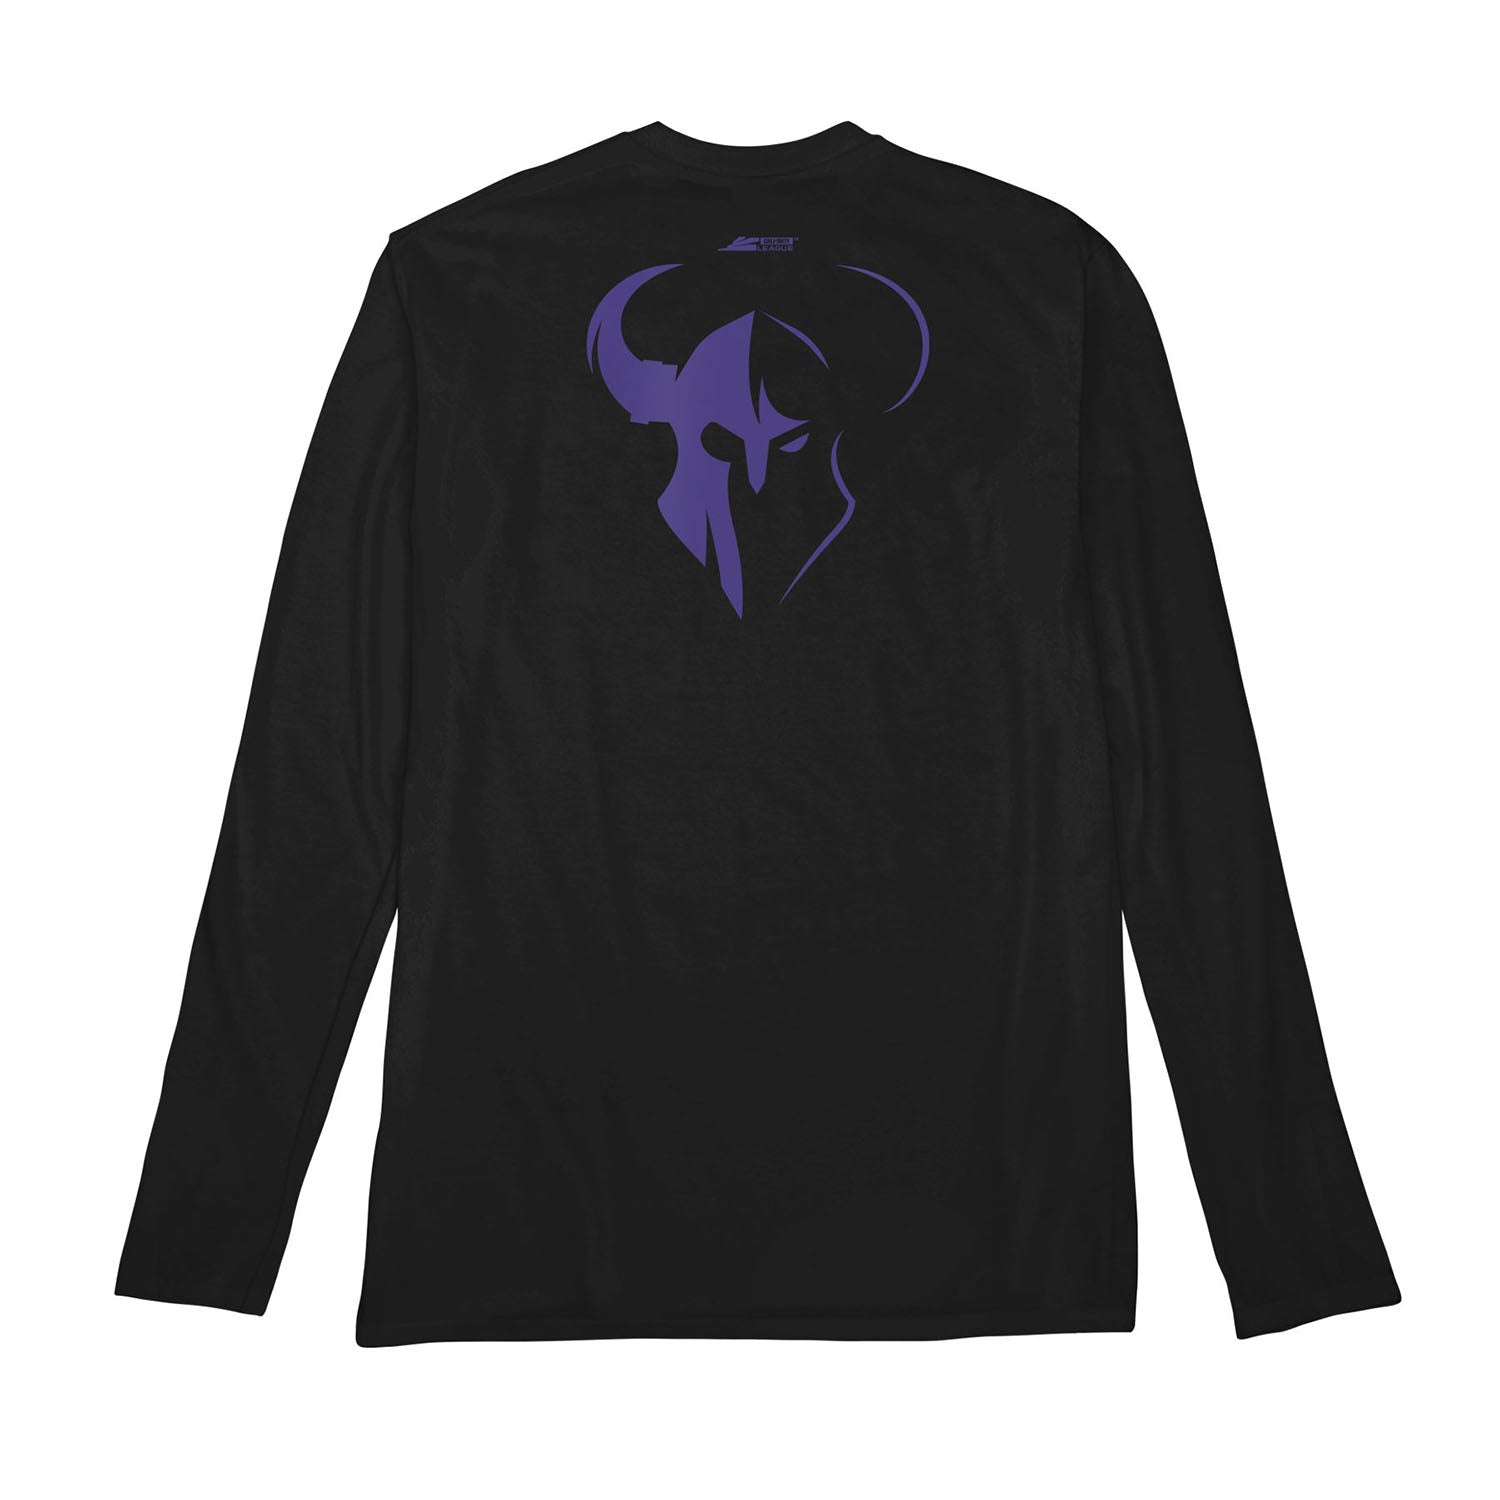 Minnesota Røkkr Black Singular Logo Long Sleeve T-Shirt - Back View